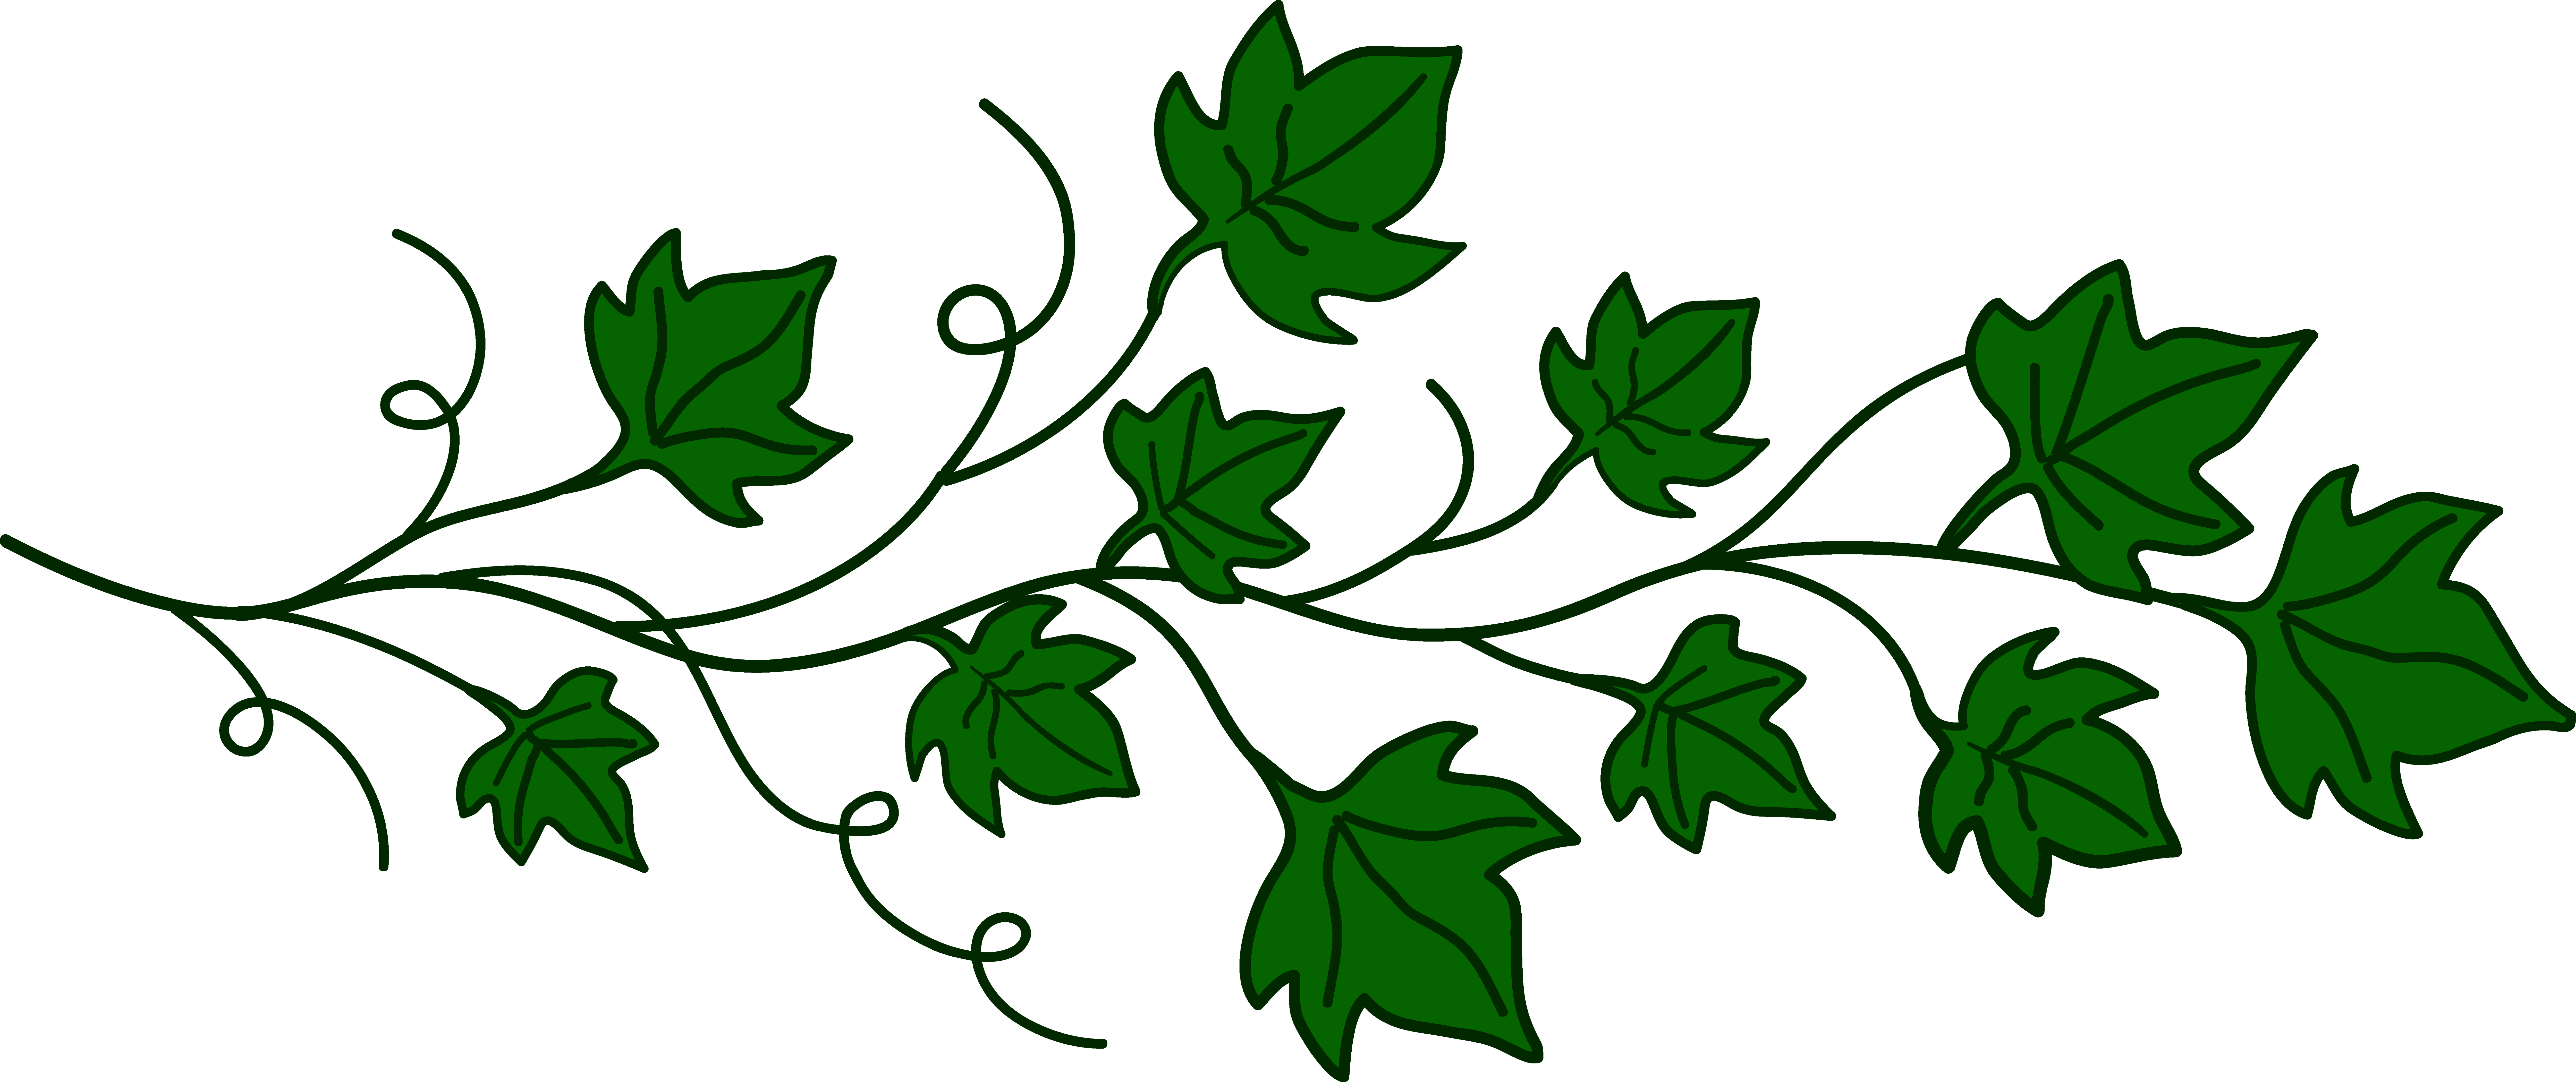 1000+ images about Popular leaf shapes in design on Pinterest.